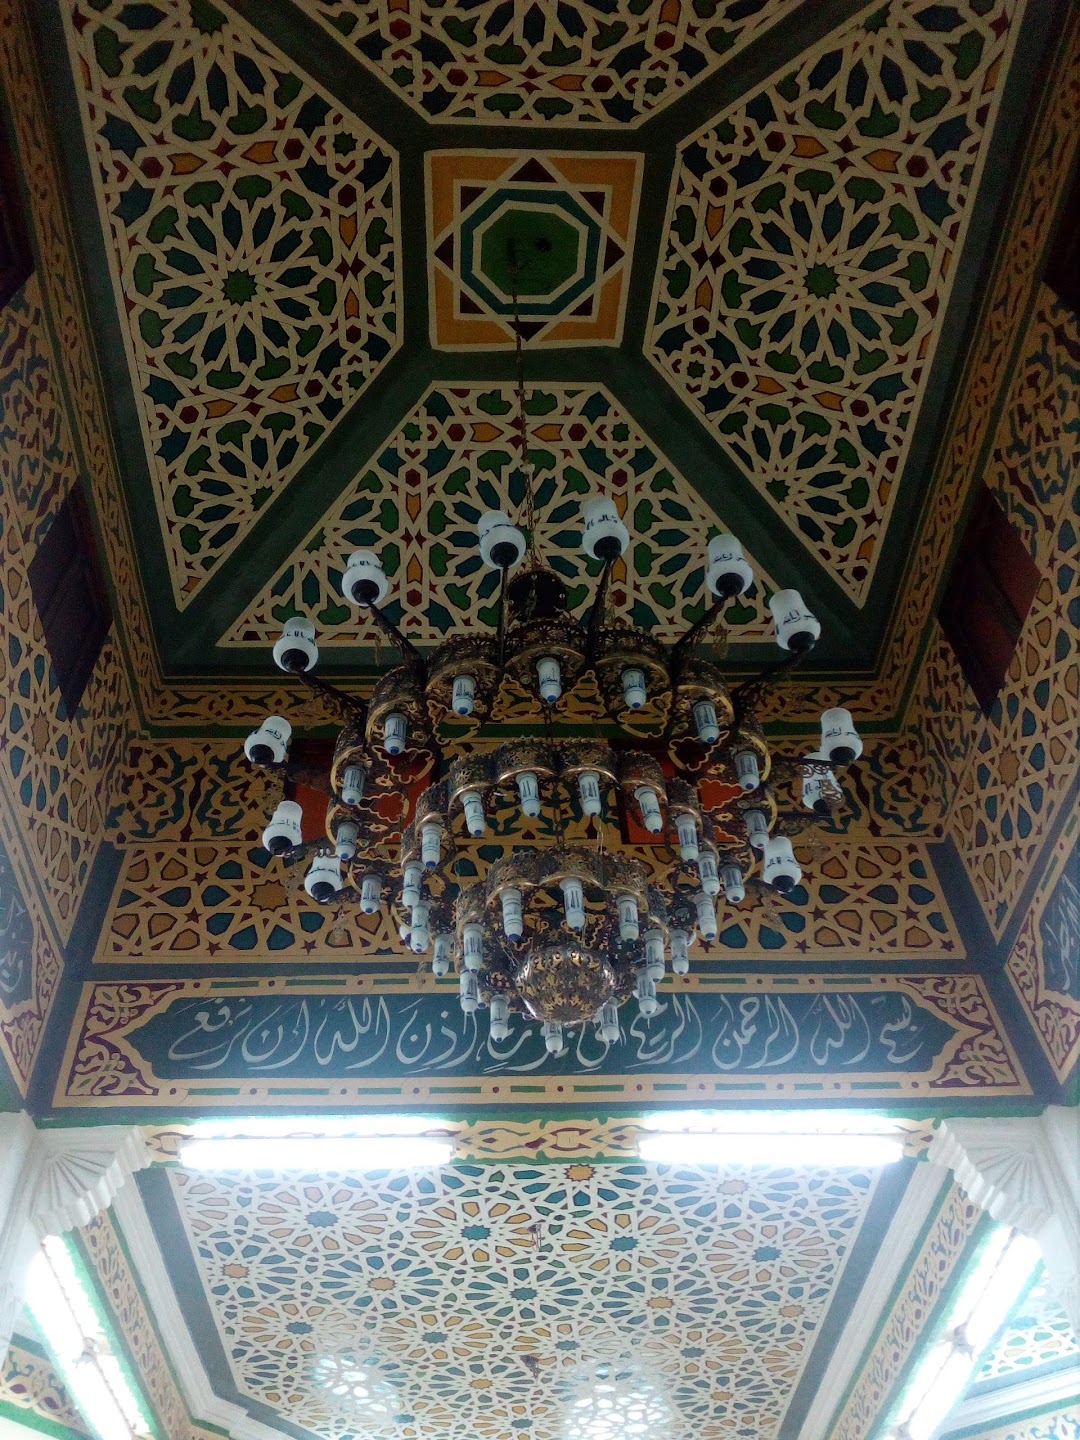 Almsid Mosque